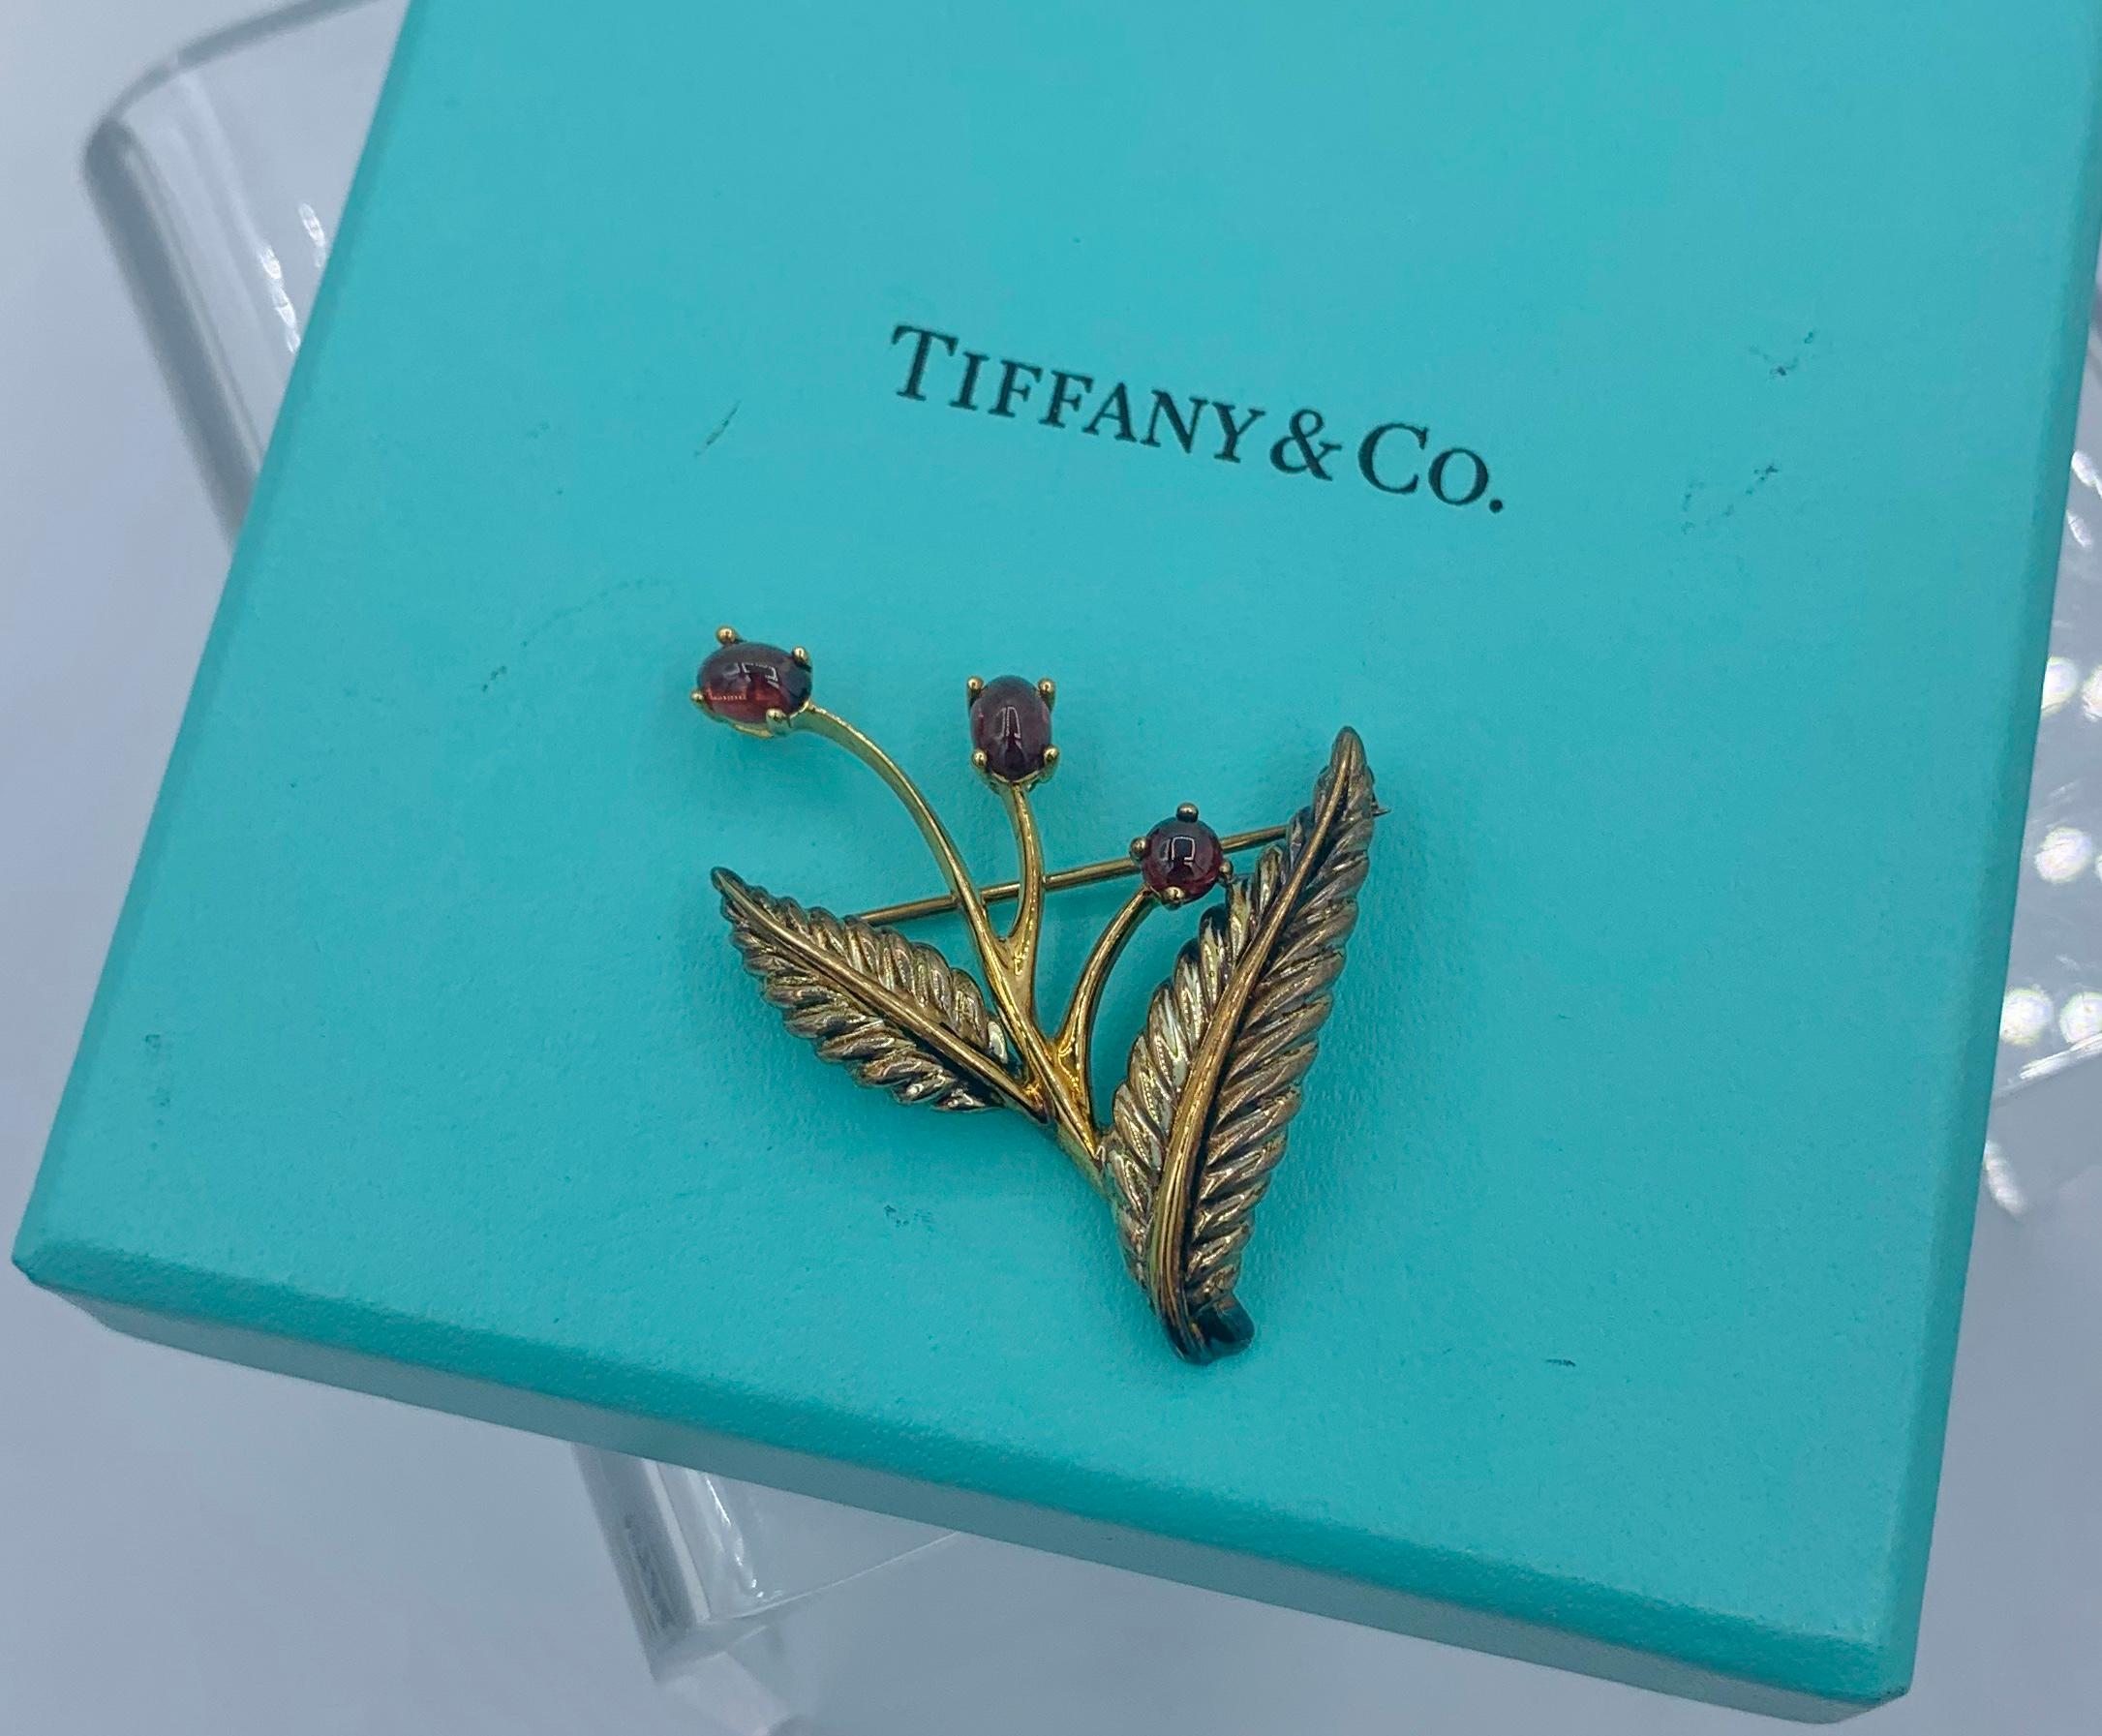 Dies ist ein reizvolles Vintage-Geschirr von Tiffany & Co. Brosche mit Granat-Blumenmotiv aus 18 Karat Gelbgold und Sterlingsilber, datiert auf 2003.  Die wunderbare Blume besteht aus drei ovalen und runden Cabochon-Granat-Edelsteinen.  Die Granate